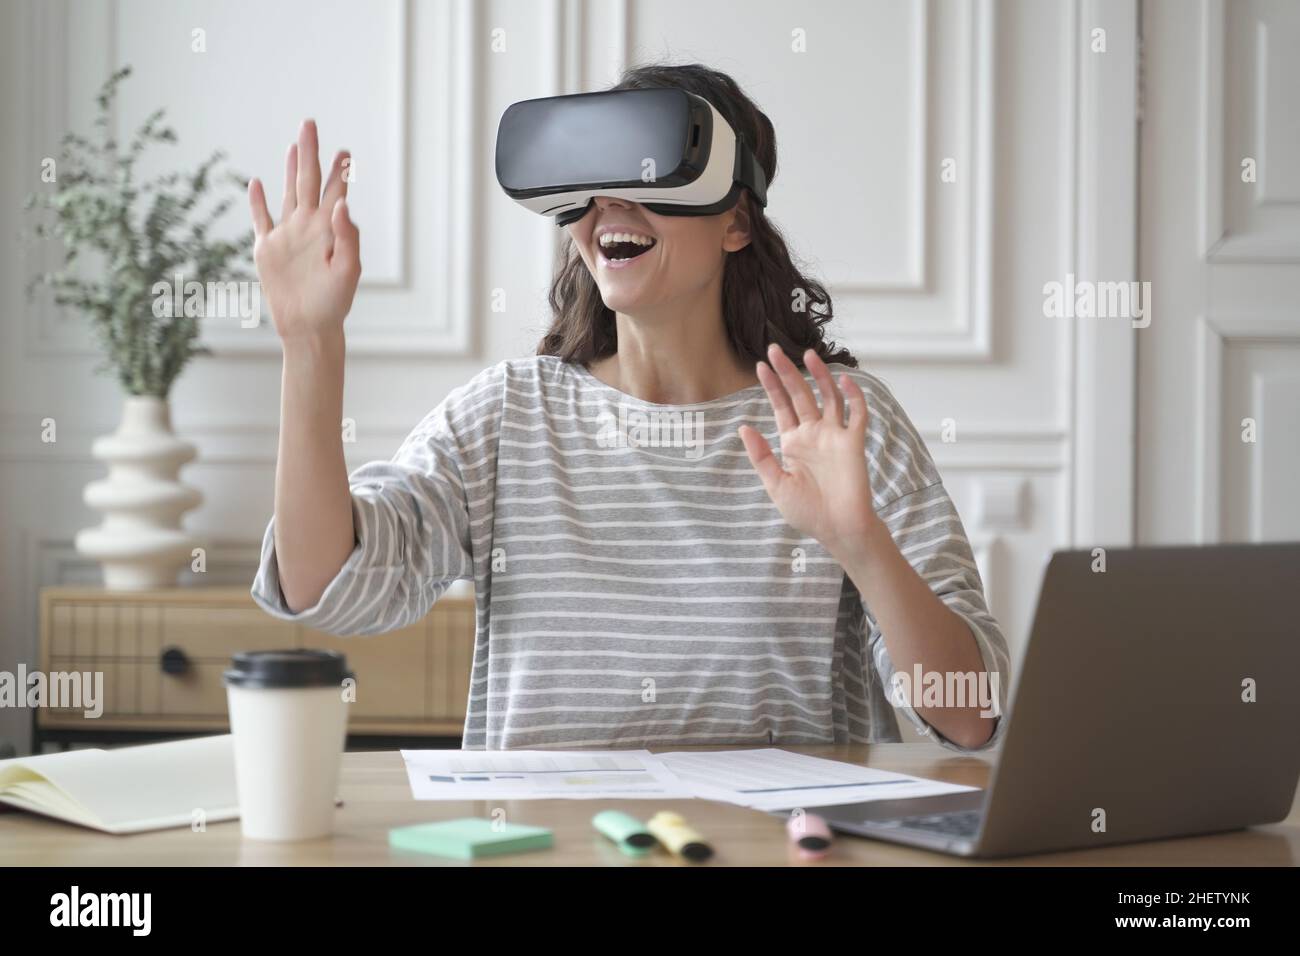 Aufgeregt erstaunt Frau trägt VR-Brille genießen erstaunliche  Virtual-Reality-Erlebnis bei der Arbeit Stockfotografie - Alamy